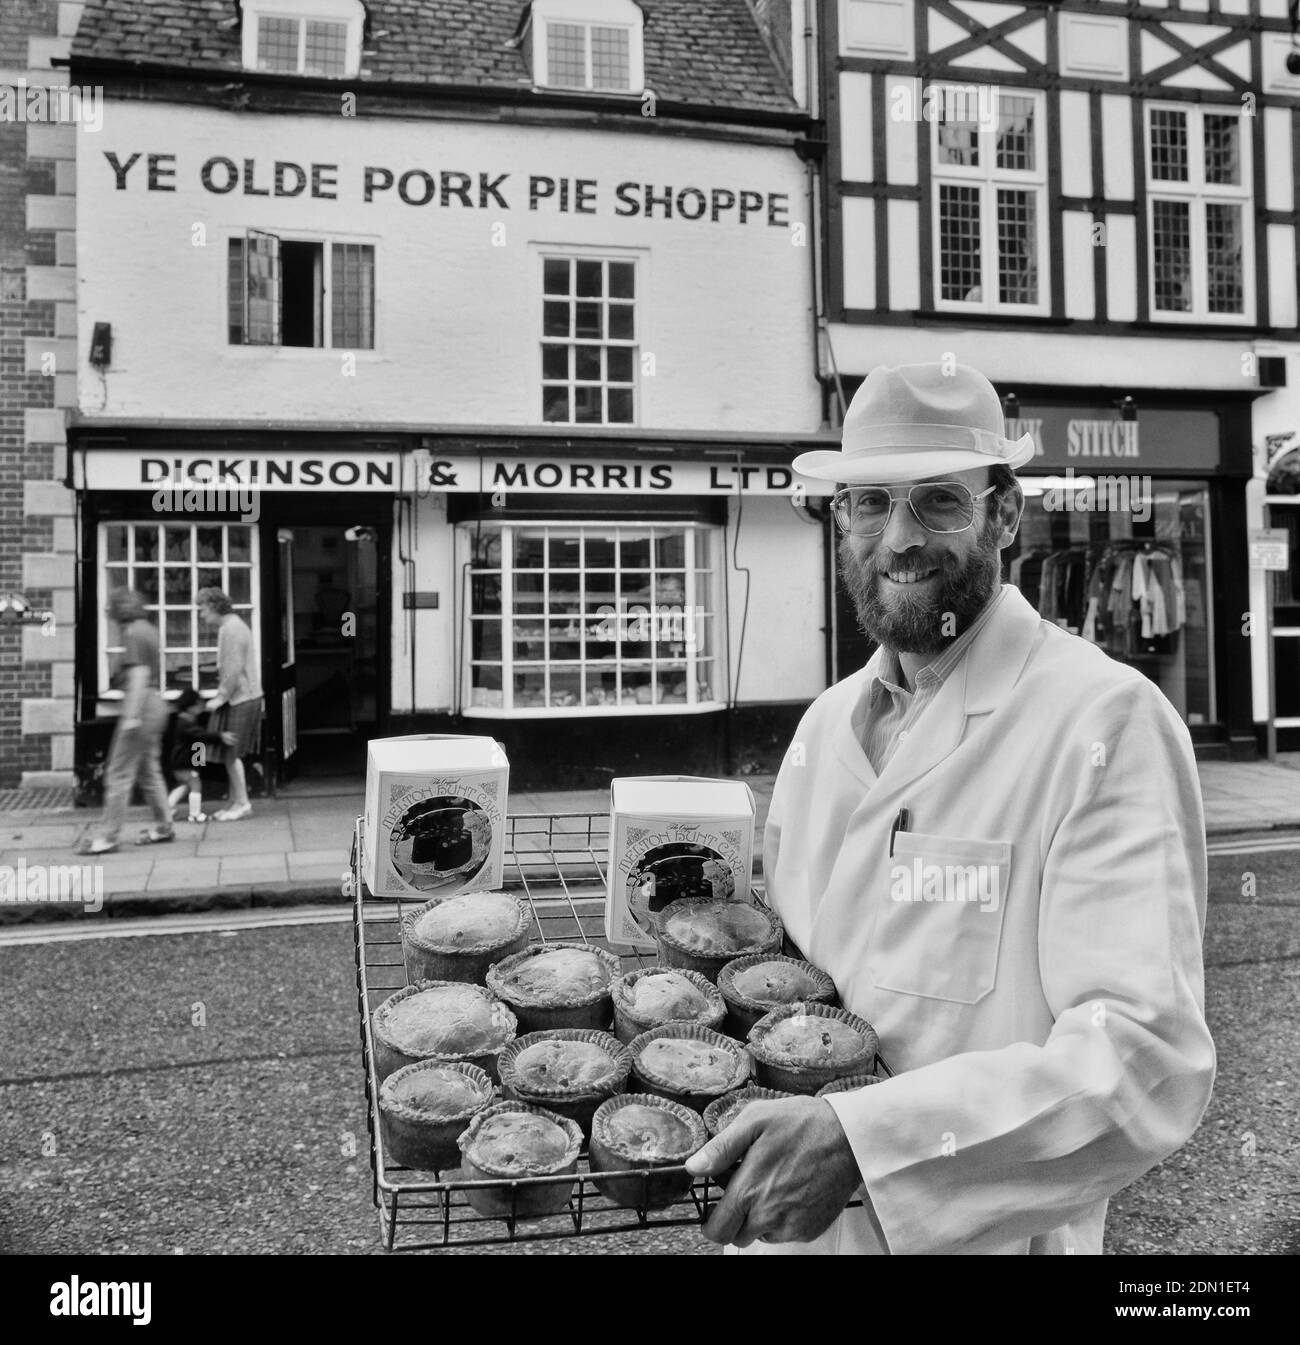 Un boulanger contient un plateau de chaussons de porc Melton Mowbray et de gâteaux Melton Hunt à l'extérieur de Ye Olde Pork Pie Shoppe. Melton Mowbray. Leicestershire. Angleterre, Royaume-Uni Banque D'Images